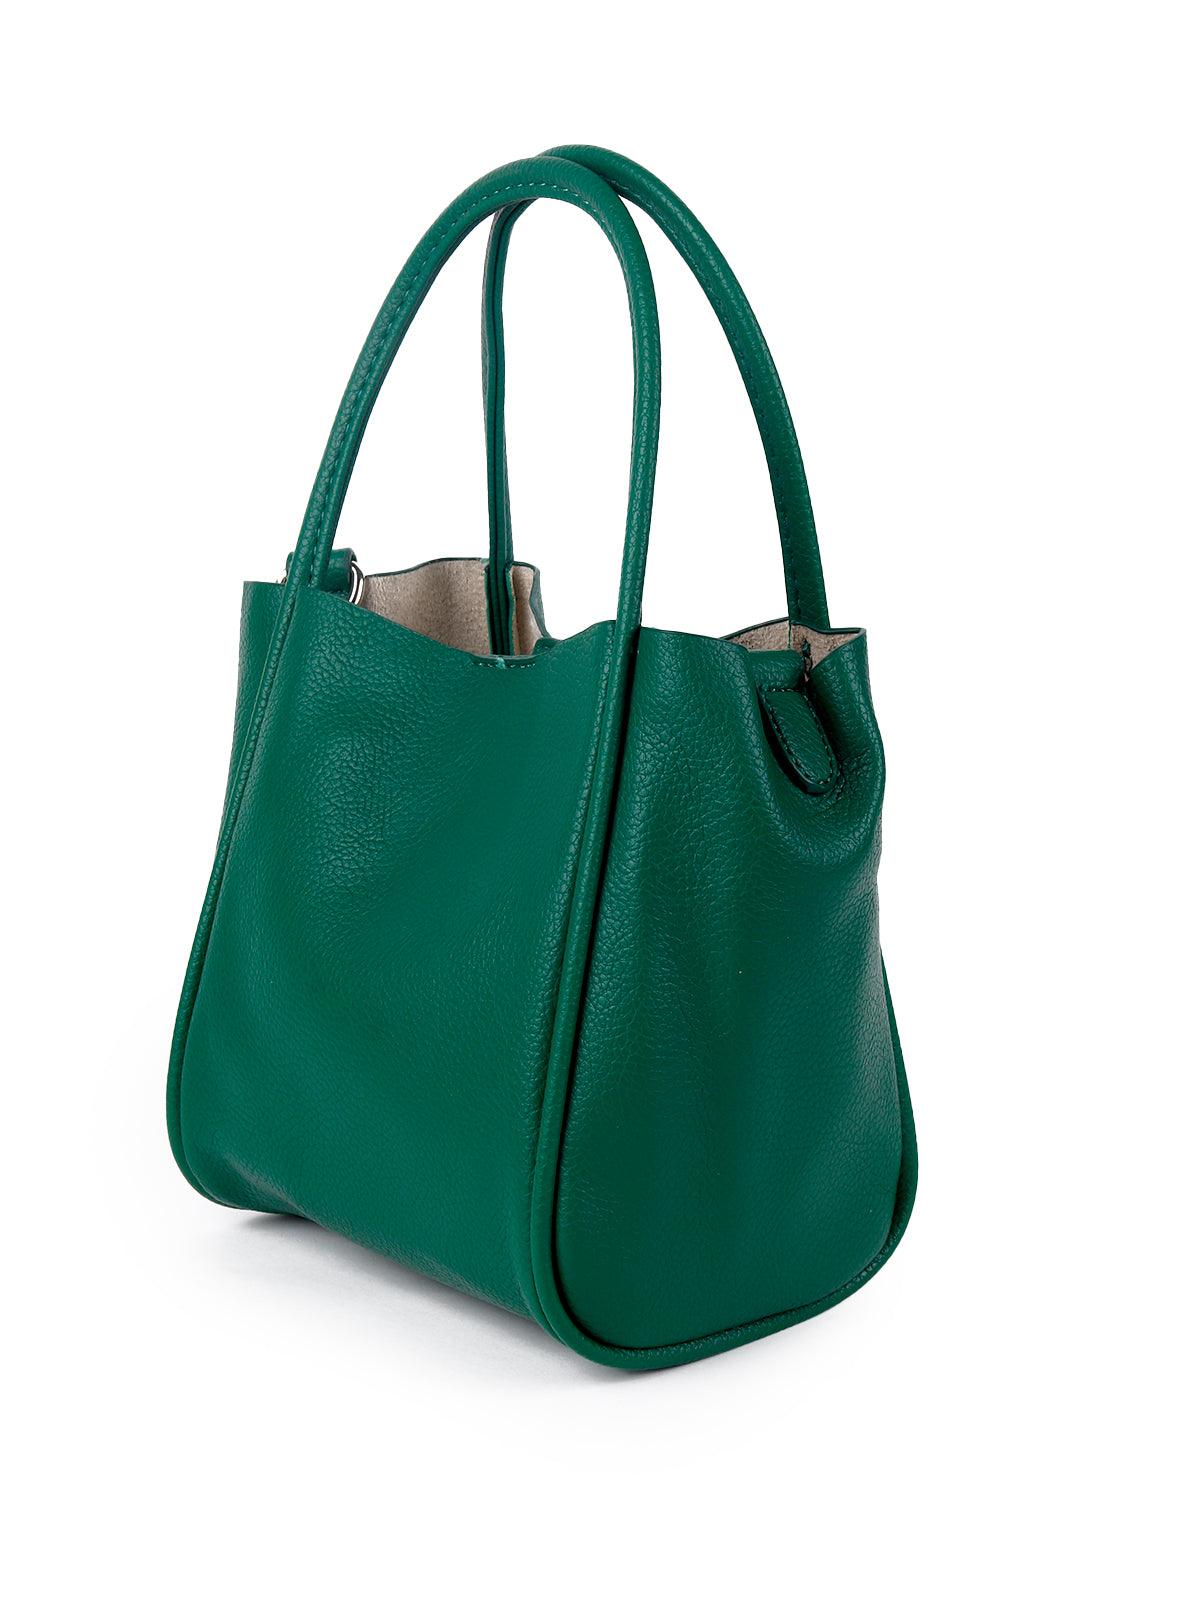 Classic green structured textured shoulder bag - Odette